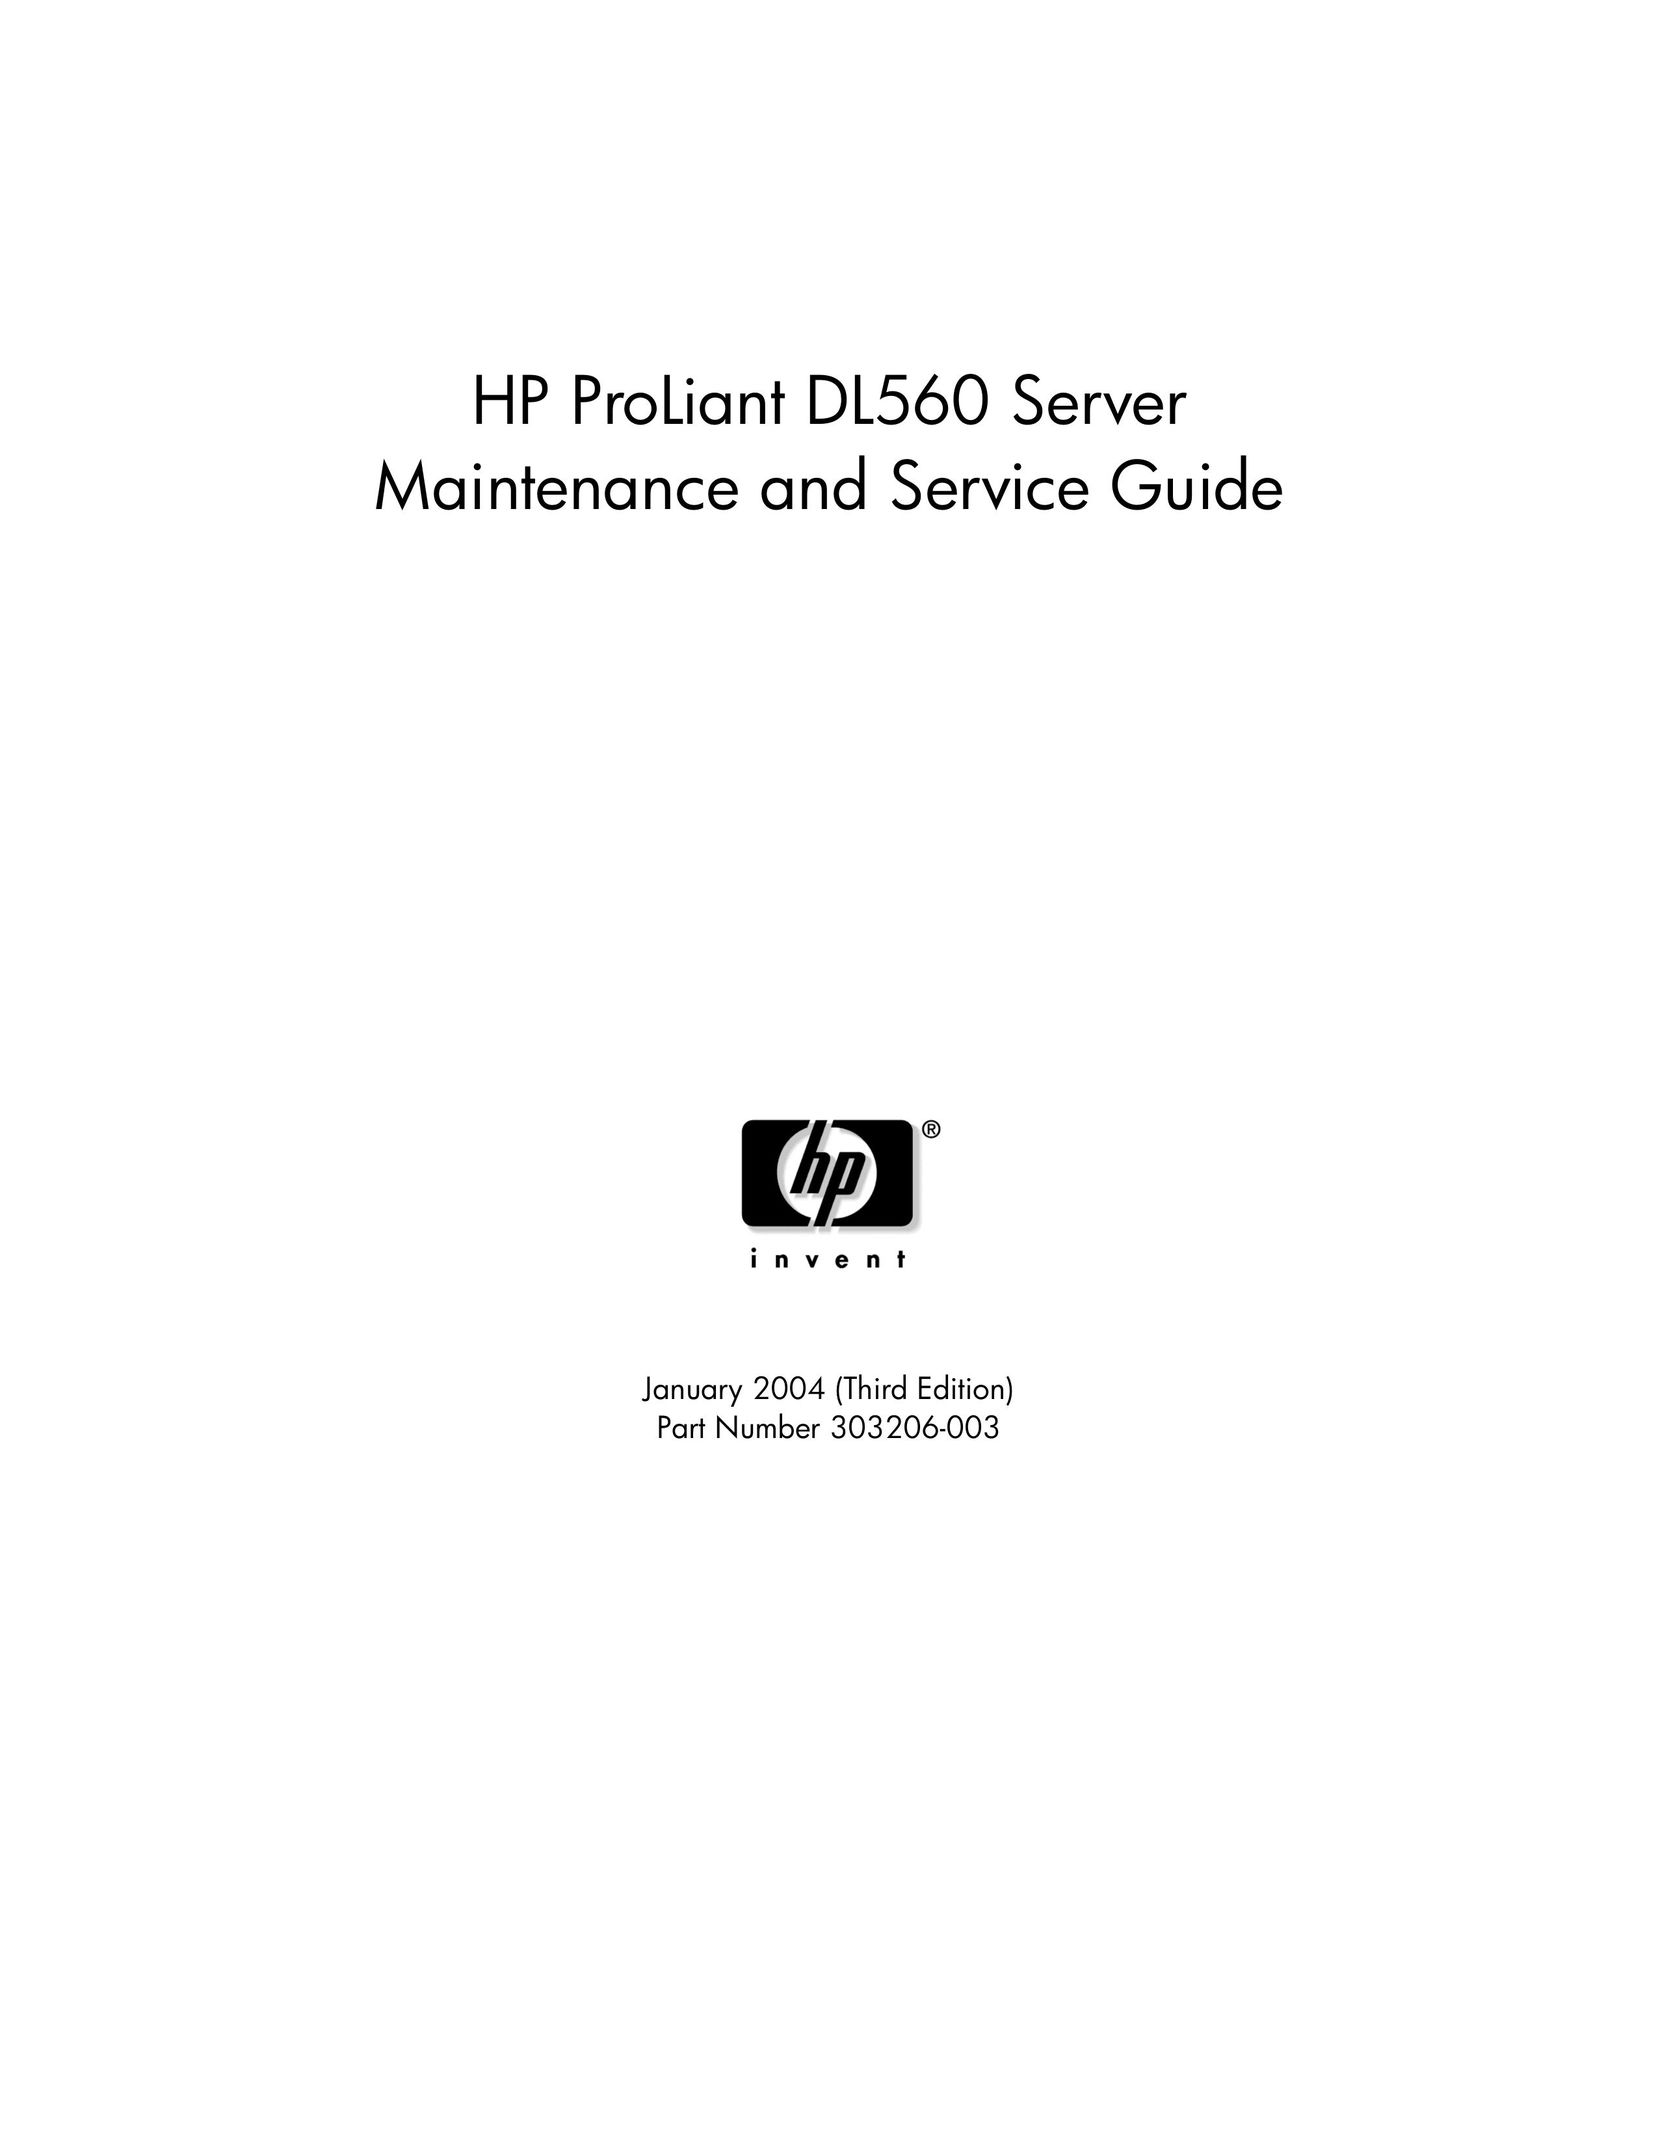 HP (Hewlett-Packard) 686784-001 Server User Manual